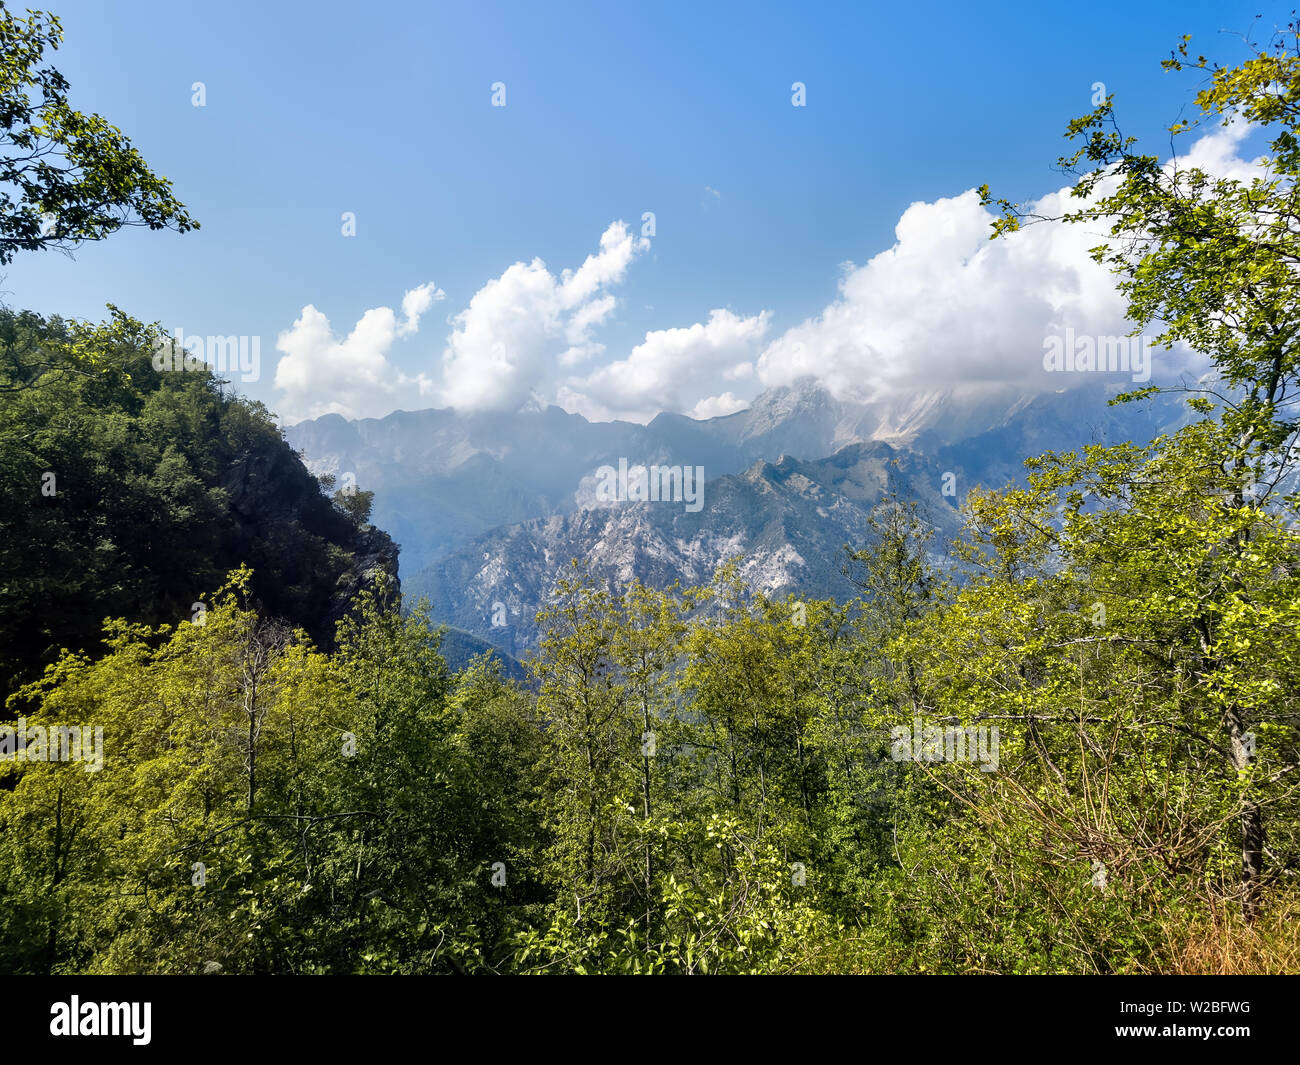 Vue sur les Alpes Apuanes, les Alpes Apuanes, près de col de montagne Vestito. Massa Carrara, Italie, Europe Banque D'Images